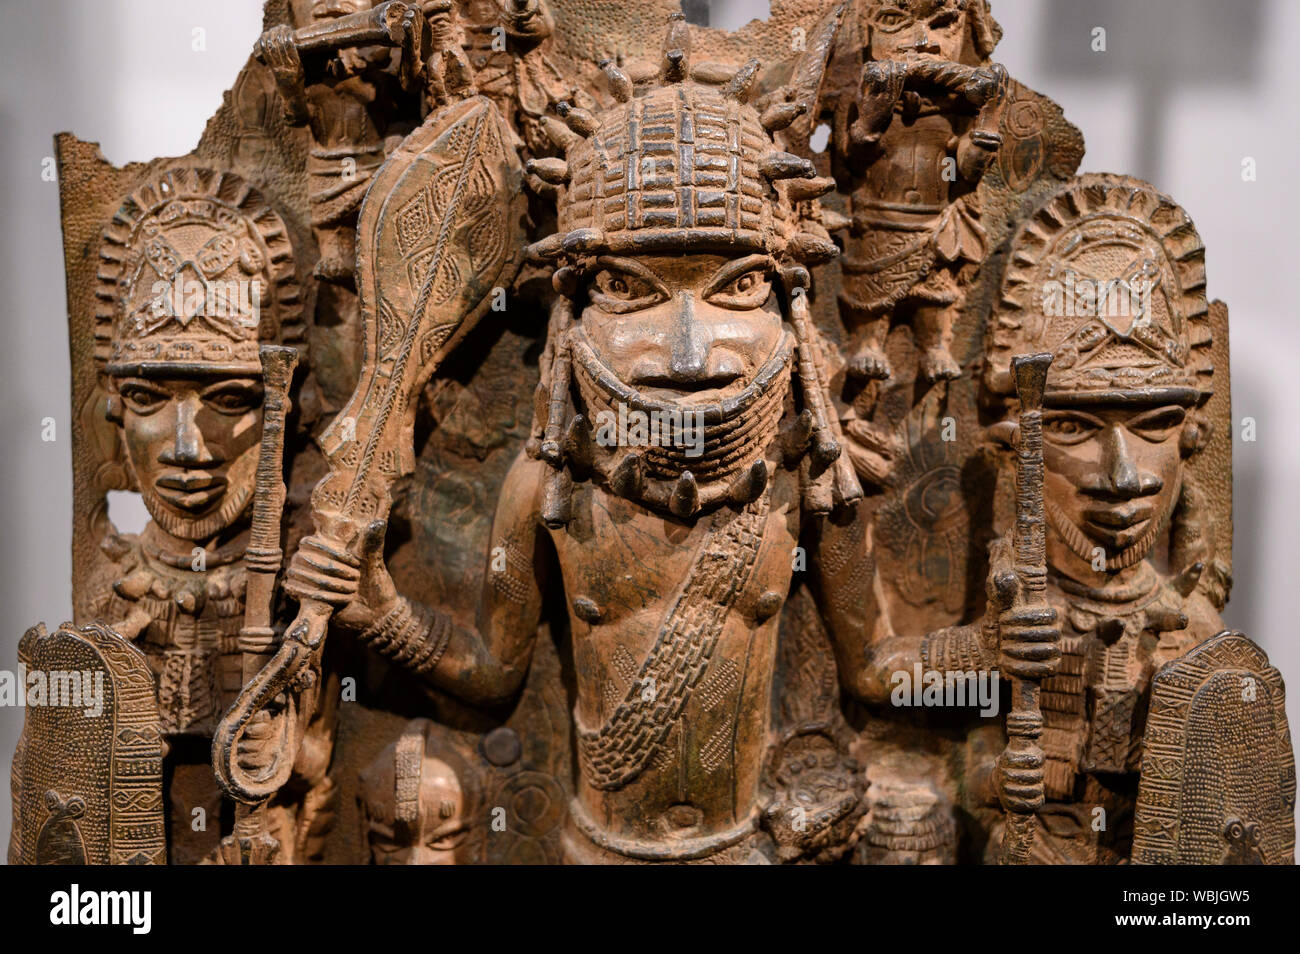 Londres. L'Angleterre. Les bronzes du Bénin sur l'affichage au British Museum, plaques de laiton à partir de la cour royale palais du royaume de Bénin, 16-17ème siècle. Banque D'Images